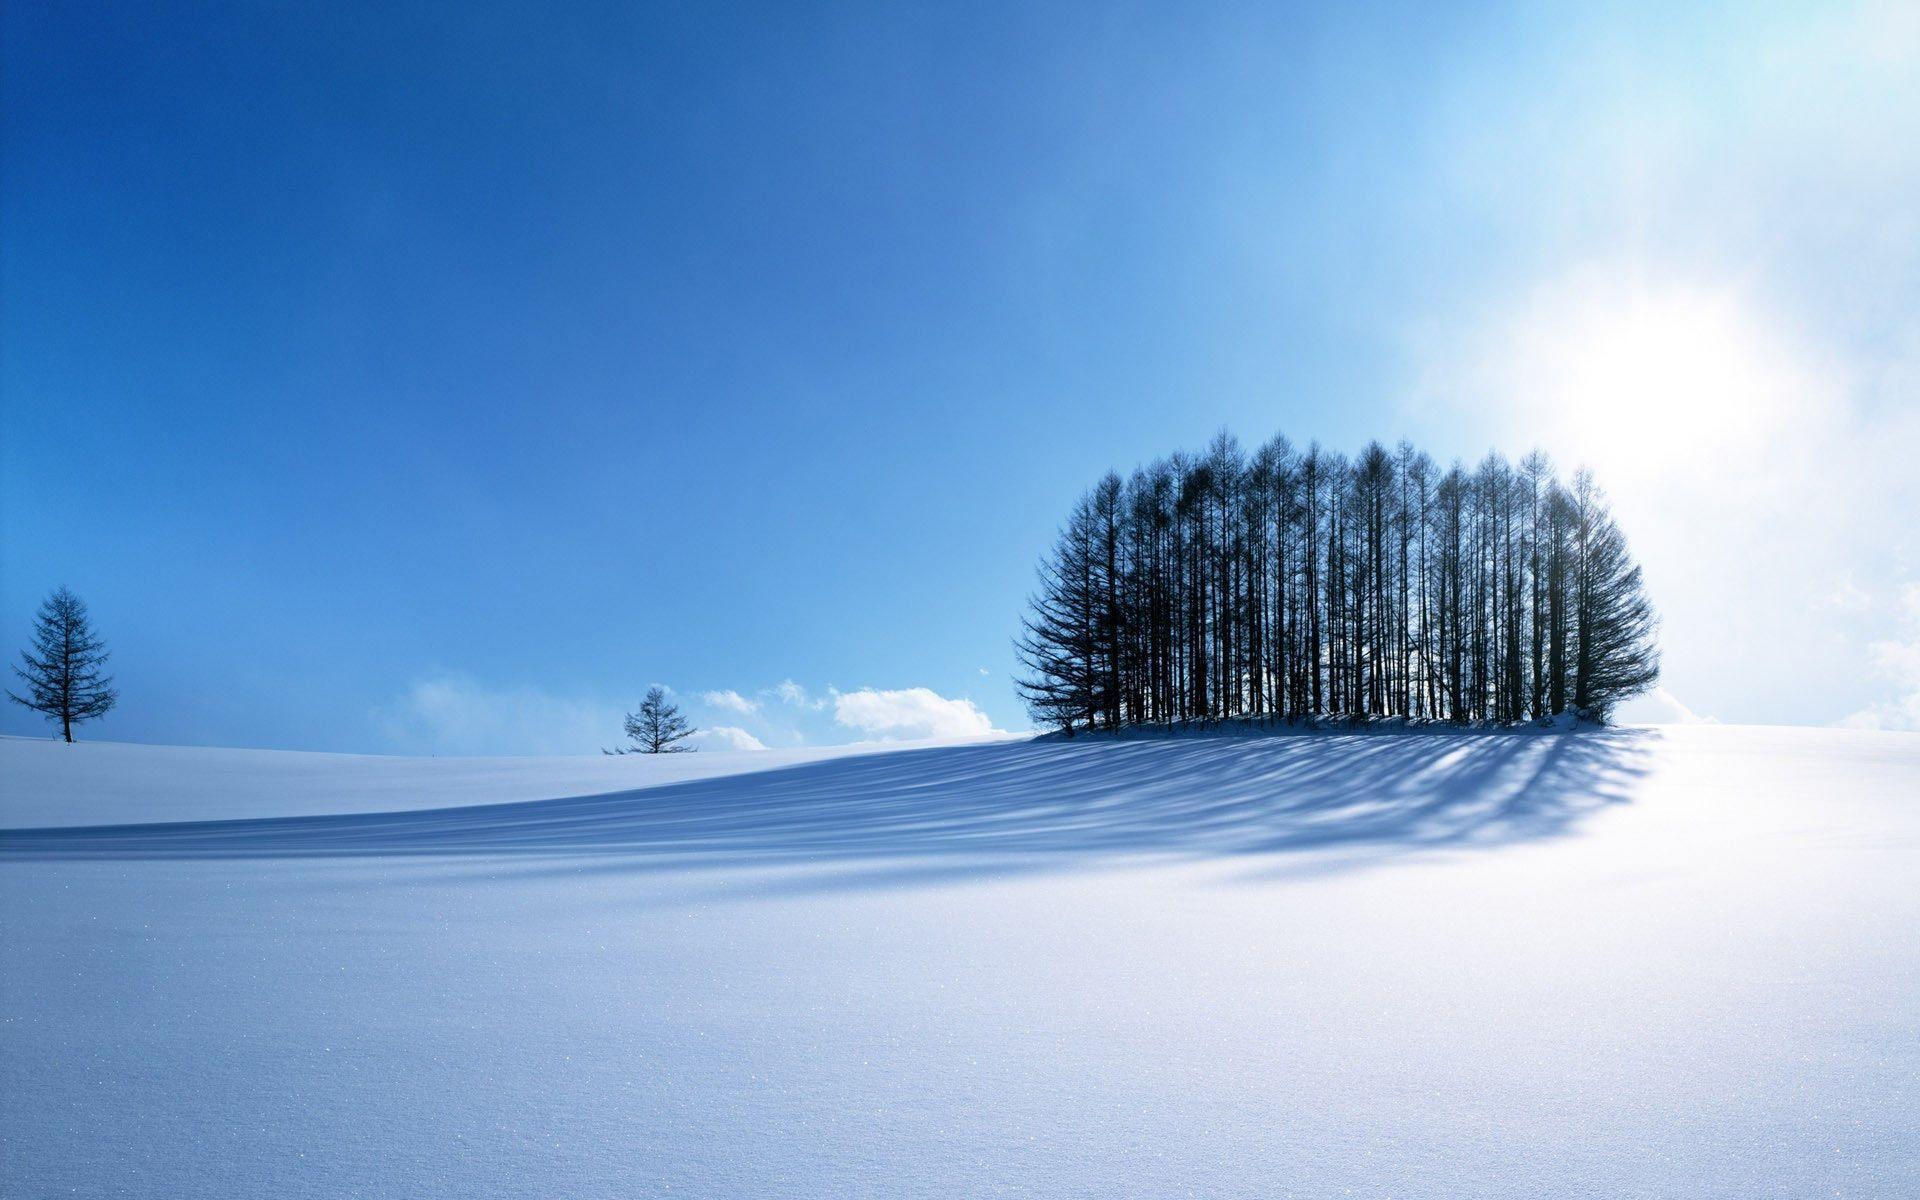 Desktop Wallpaper · Gallery · Nature · Snowy field. Free